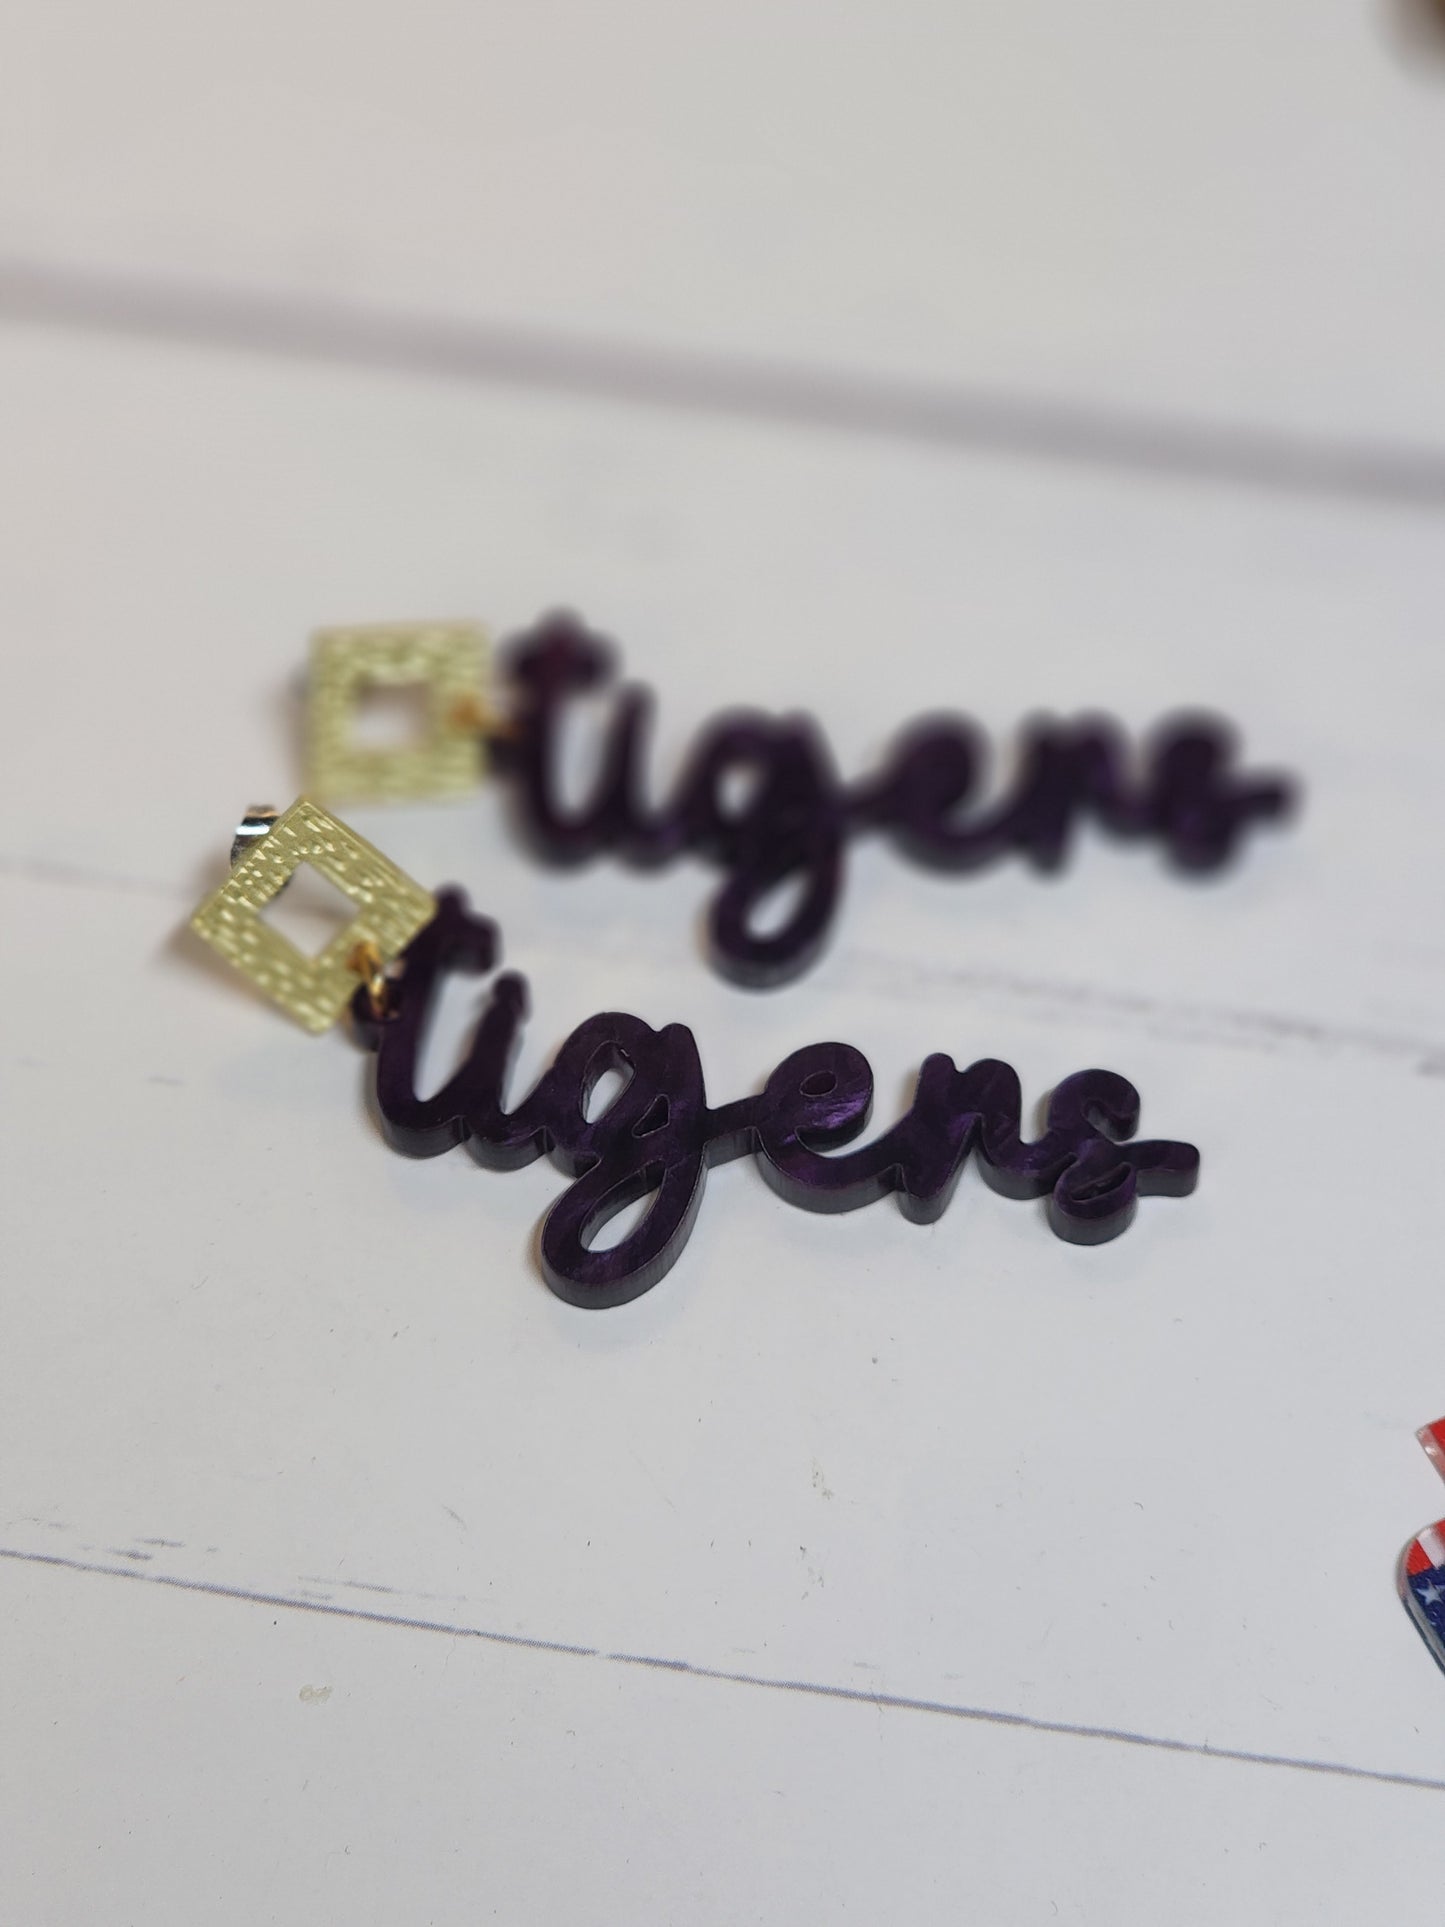 Tiger Acrylic Earrings